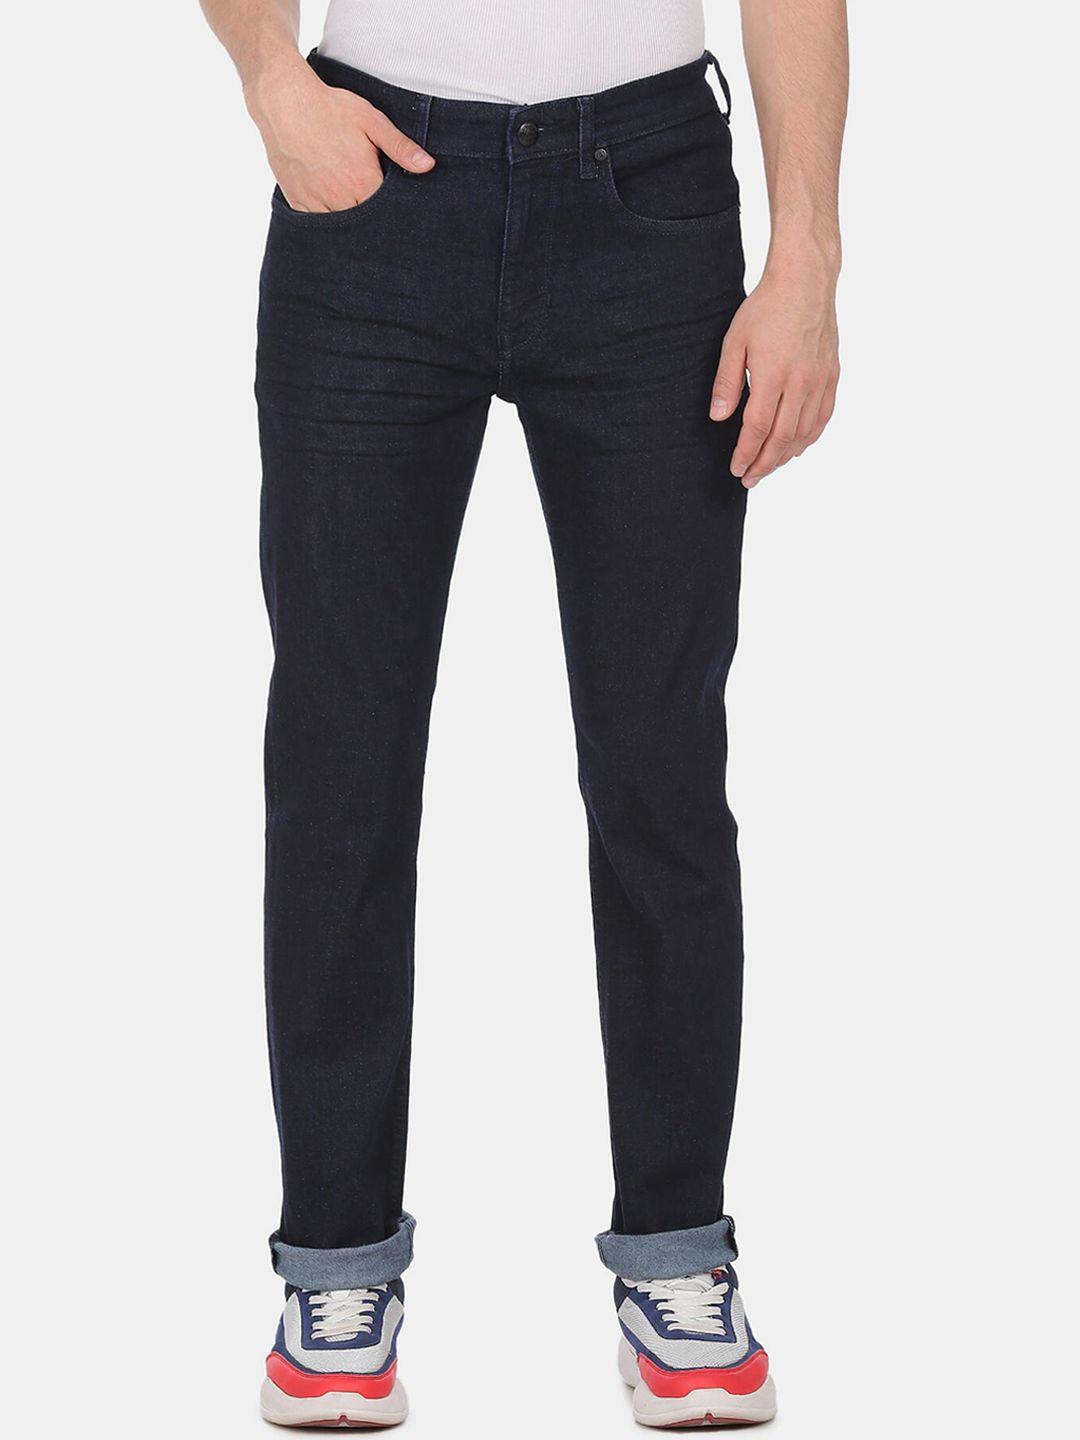 u-s-polo-assn-denim-co-men-blue-straight-fit-jeans